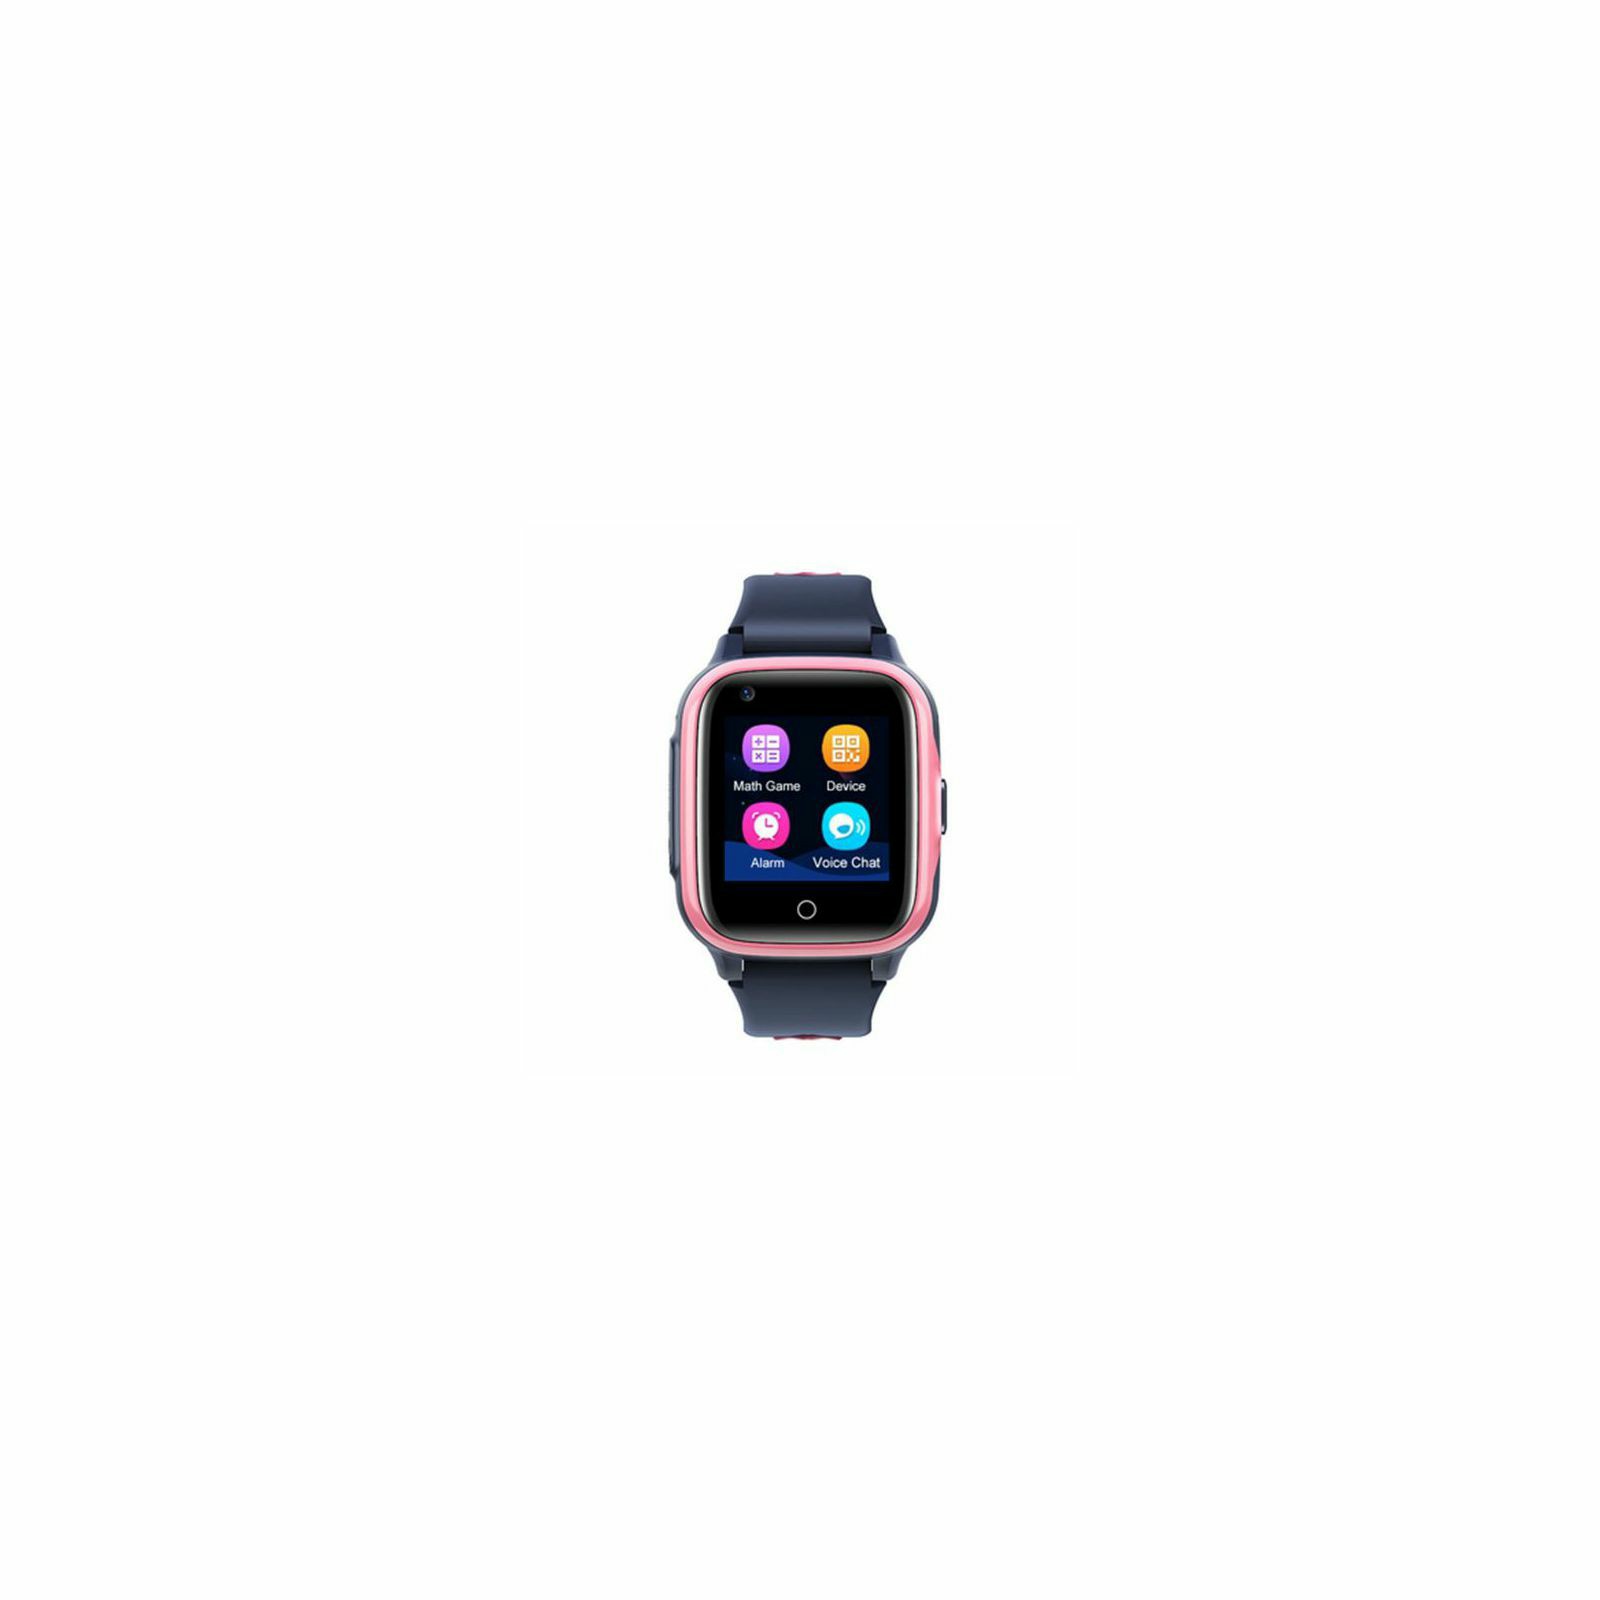 moye-bambino-4g-smart-watch-black-pink-8605042605651_45207.jpg